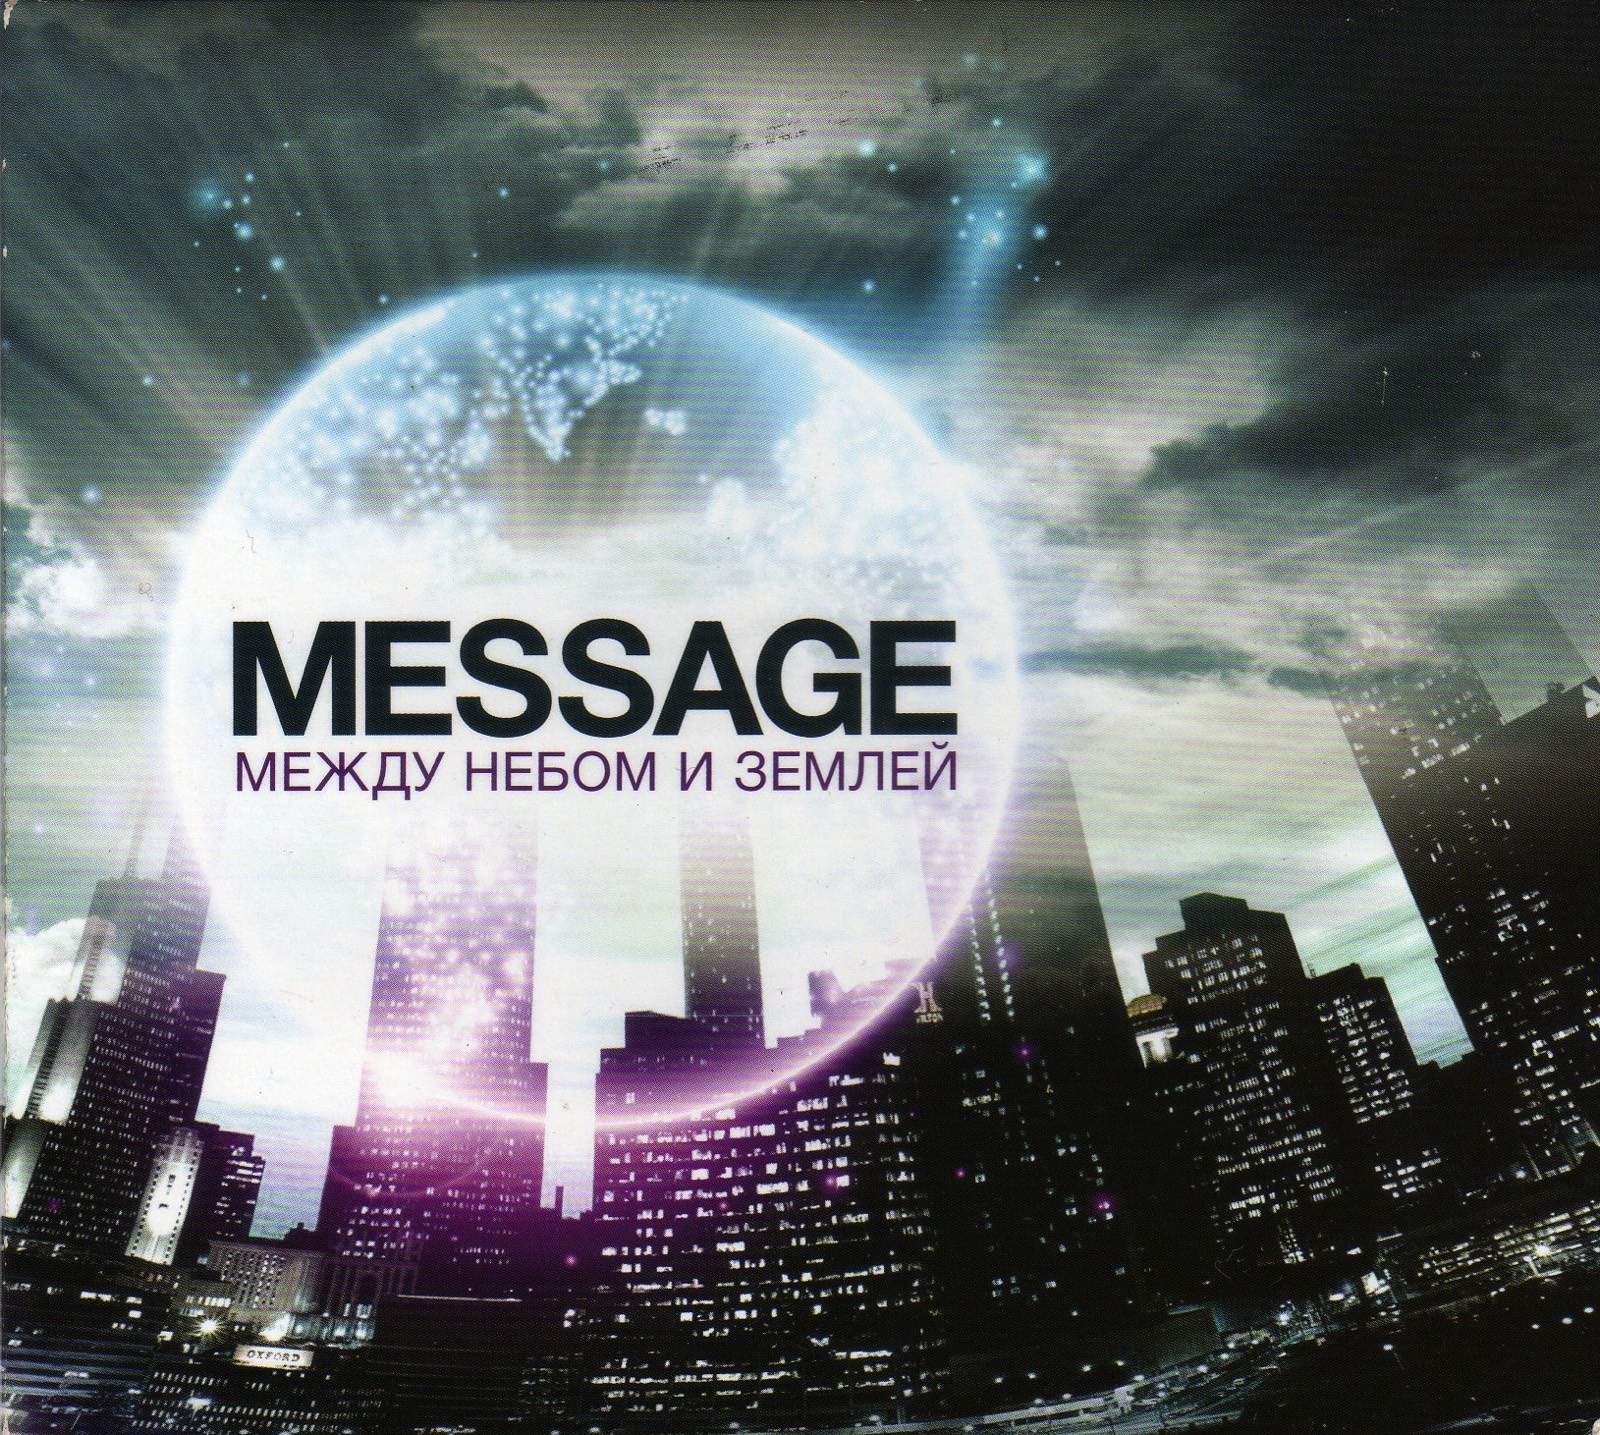 Message – Между небом и землей (2011)